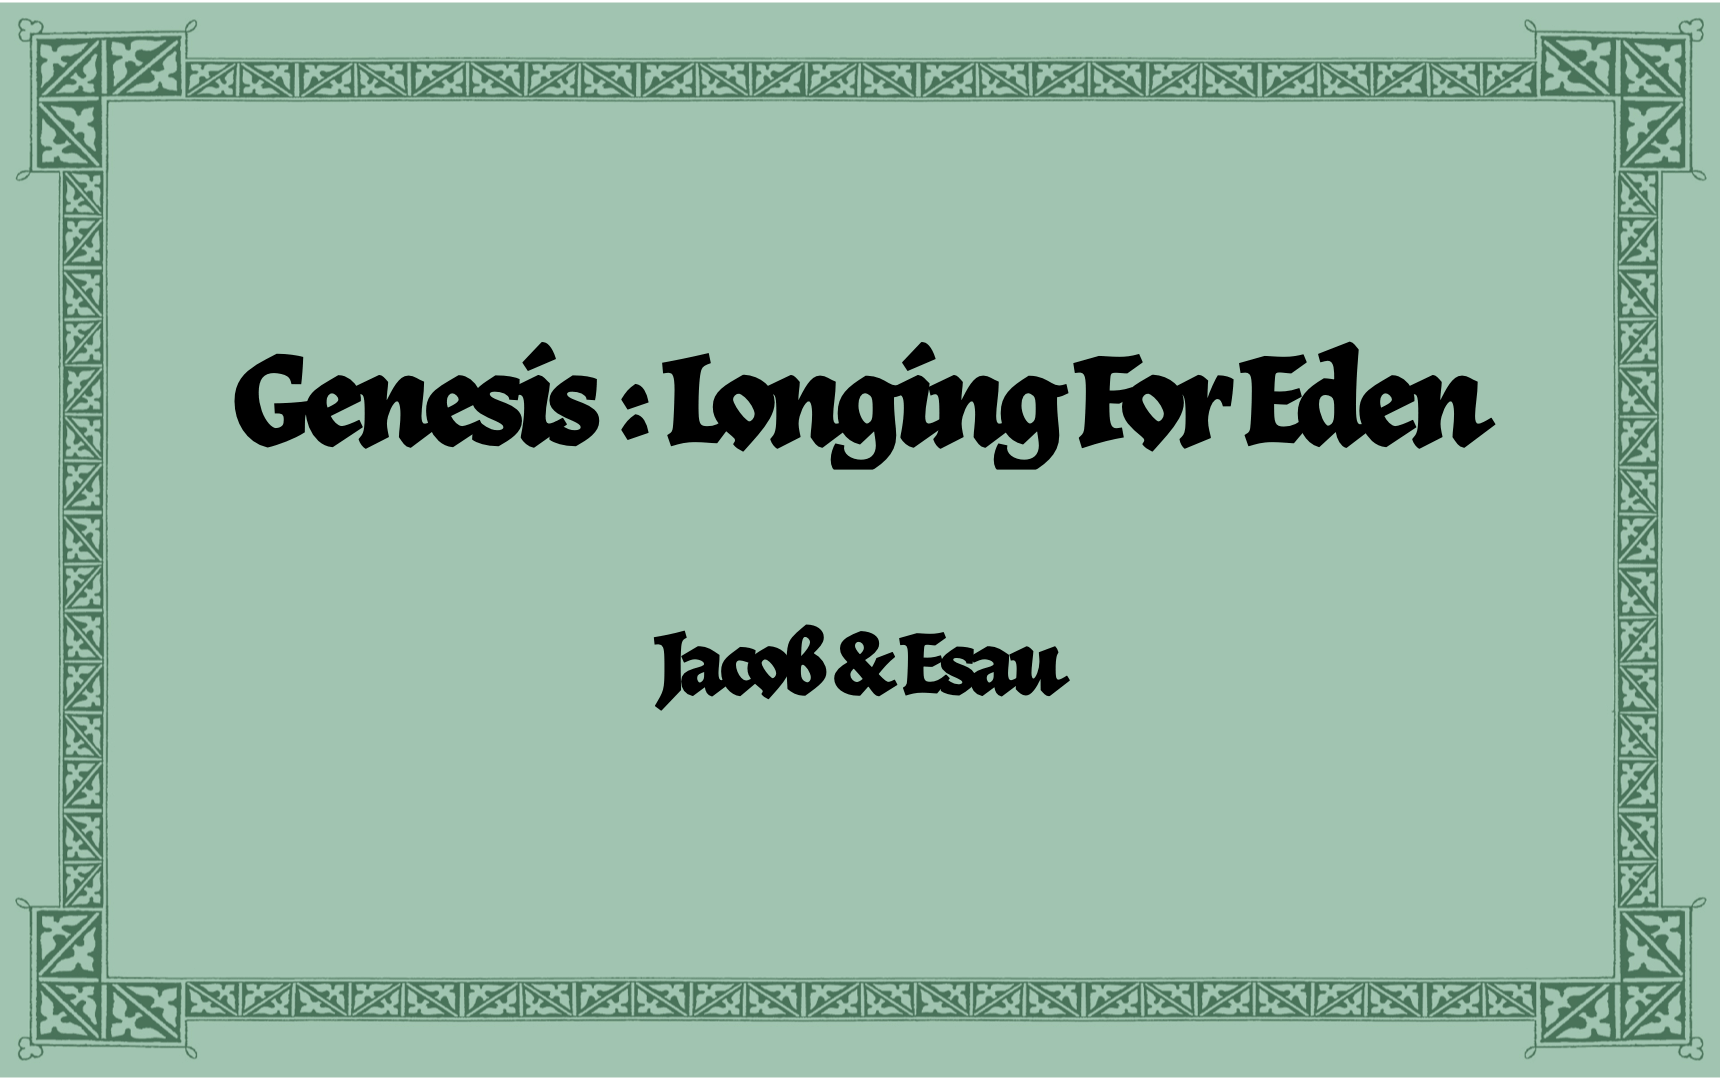 Part 8: Jacob & Esau